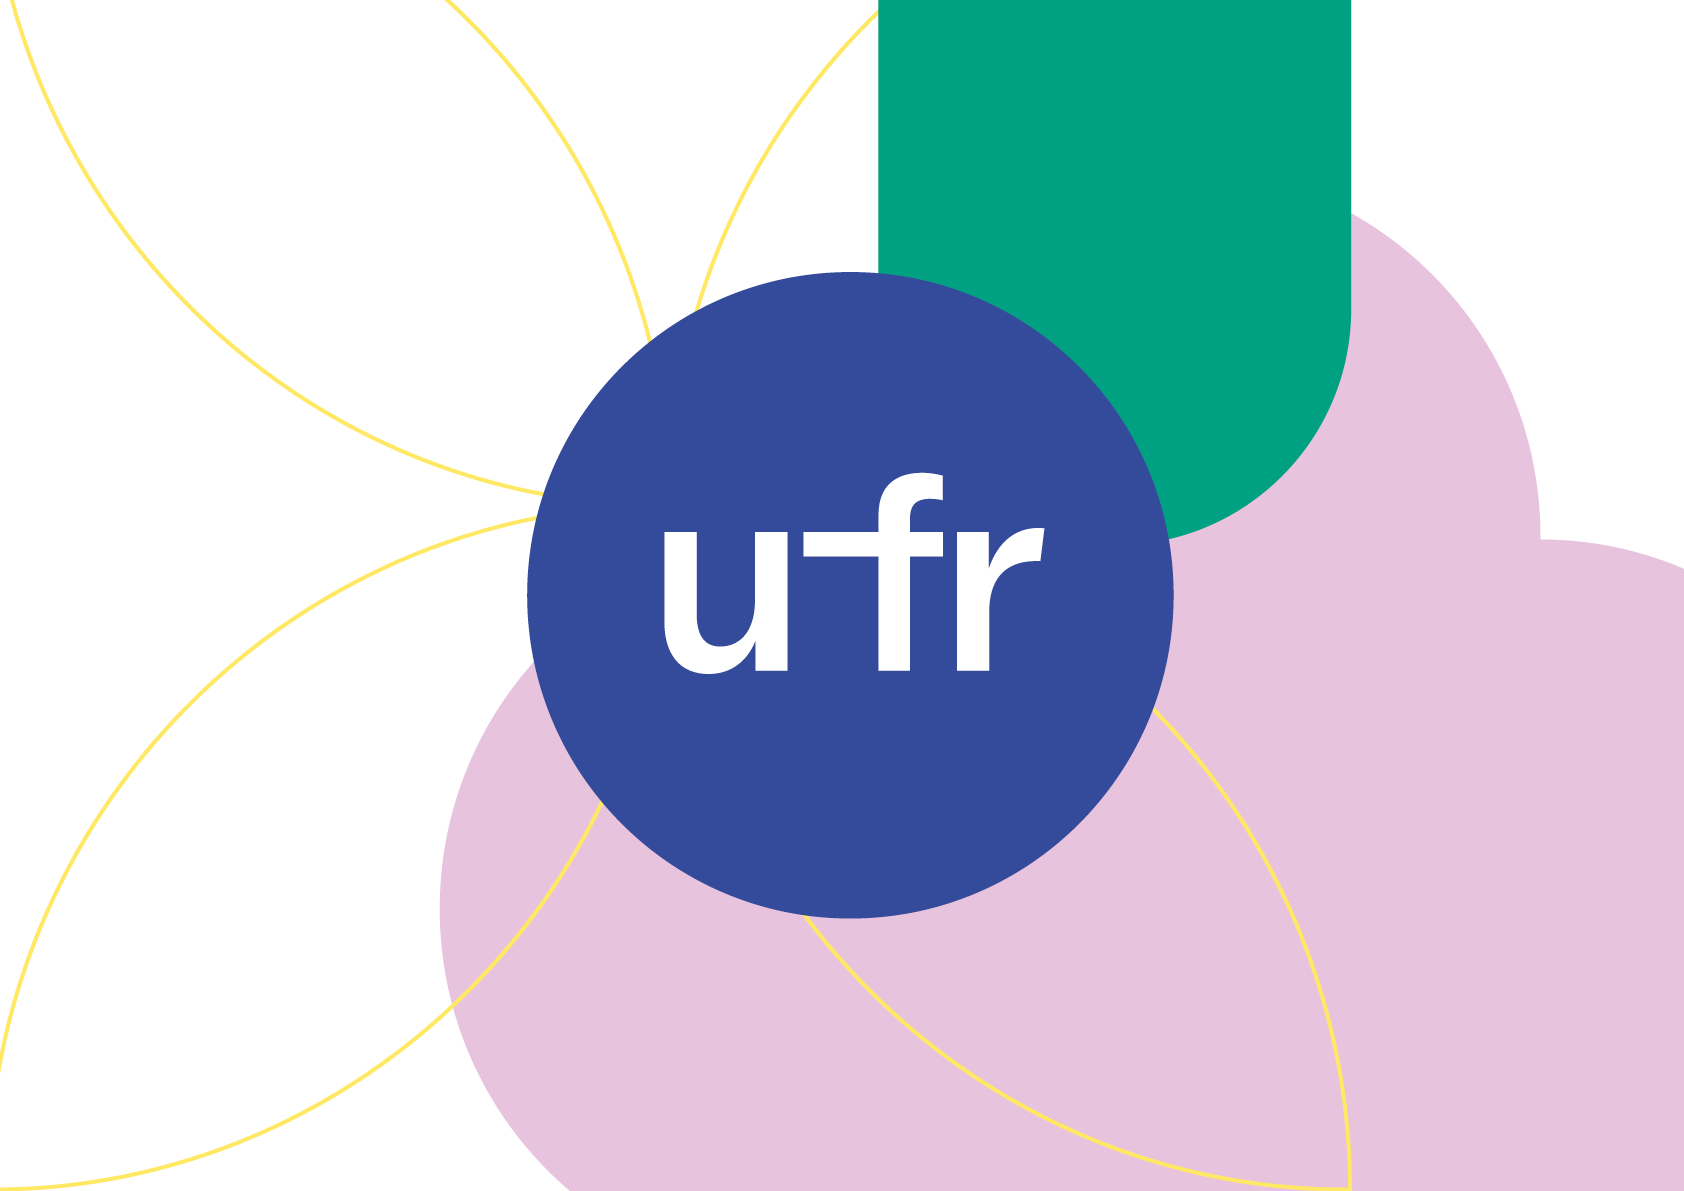 Teaserbild mit Gestaltungselementen und Logo UFR